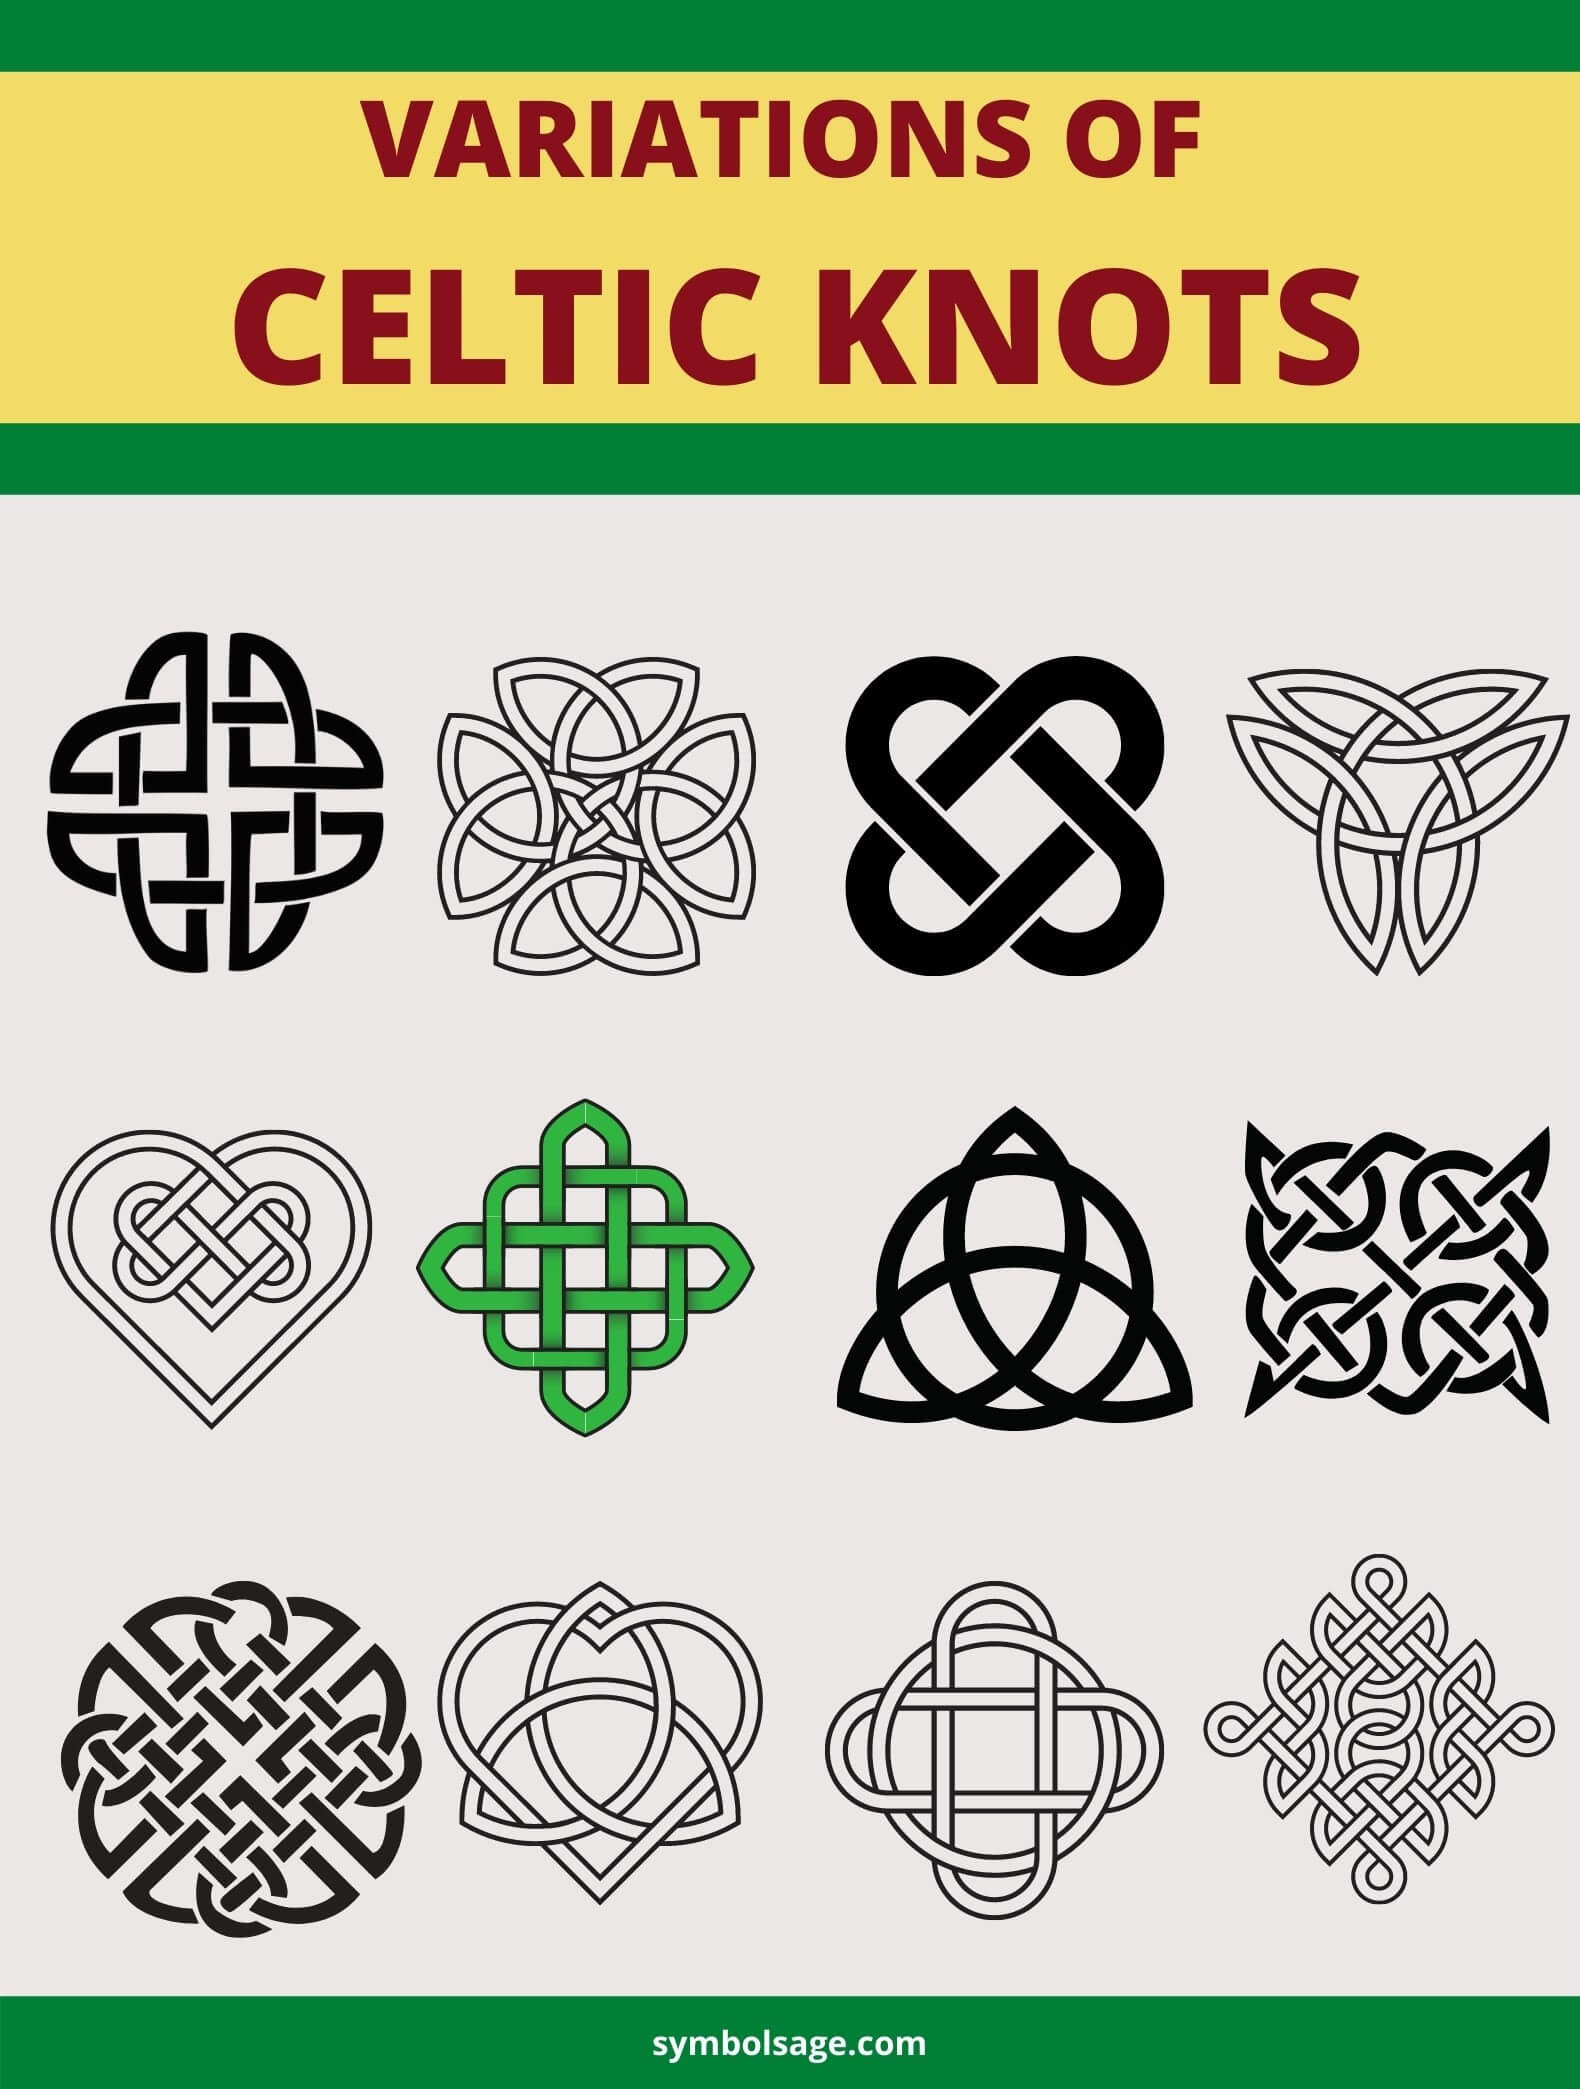 Variations of Celtic knots